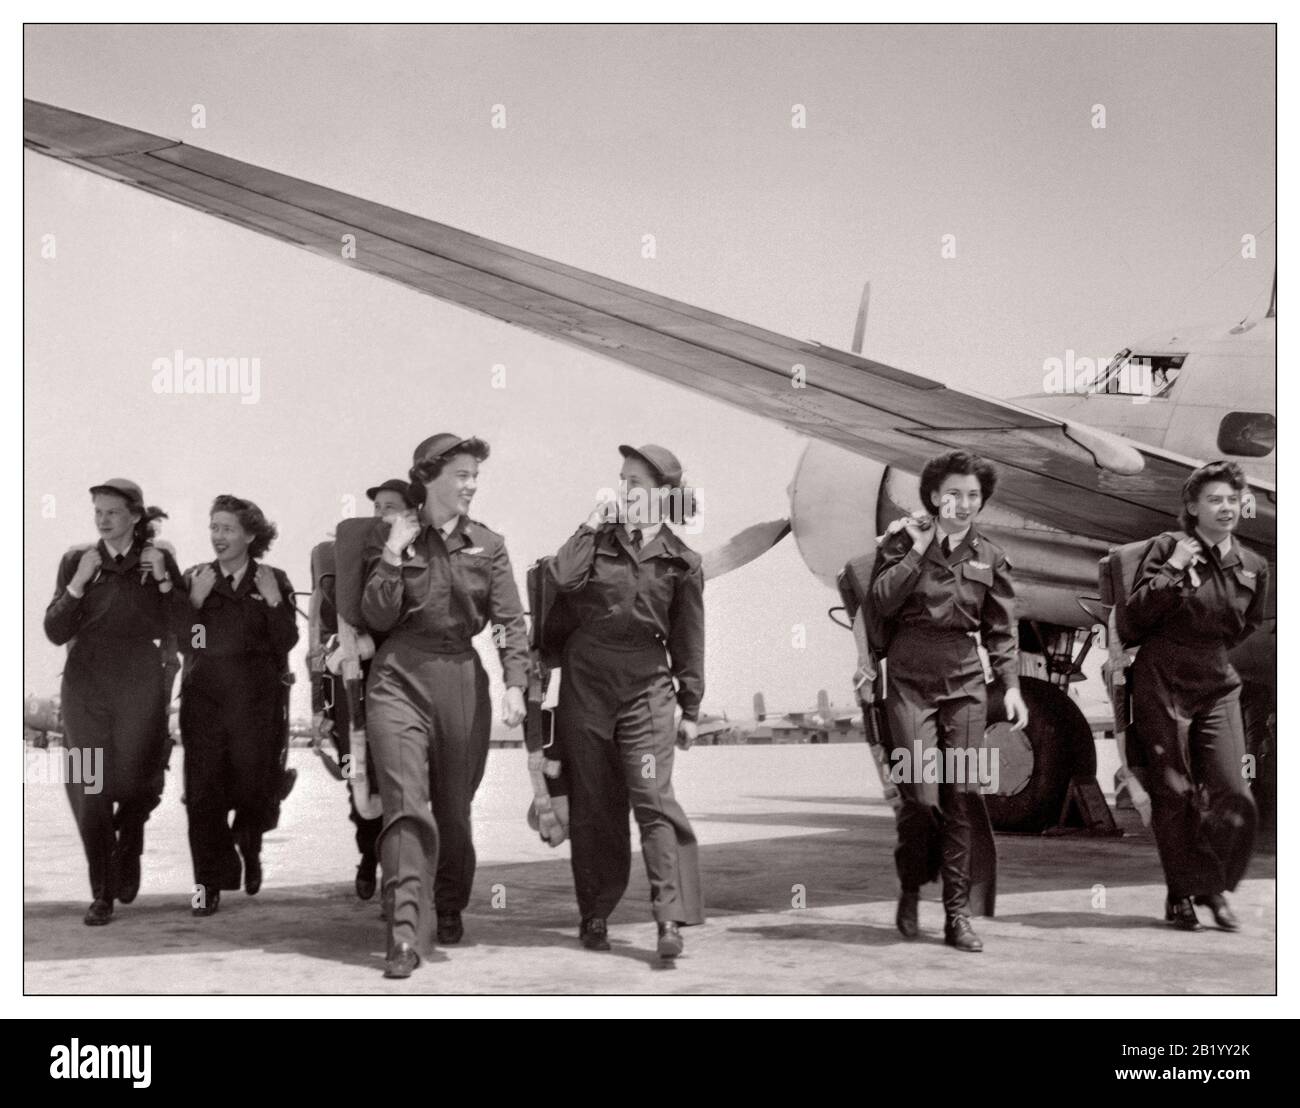 WASP WASP (WASP) der 40er Jahre - Frauen Piloten des zweiten Weltkriegs Frauen Luftwaffendienstpiloten (WASP) Die Piloten Des Women Airforce Service waren eine zivile Frauenfliegerorganisation, die den Luftstreitkräften der United States Army beigeordnet war, um während des zweiten Weltkriegs Militärflugzeuge zu fliegen Mitglieder waren Beamte des öffentlichen Dienstes der Vereinigten Staaten. Mitglieder von WESPEN wurden ausgebildete Piloten, die während des zweiten Weltkriegs 1943 Flugzeuge testeten, Flugzeuge ferrieten und andere Piloten ausbildeten Stockfoto